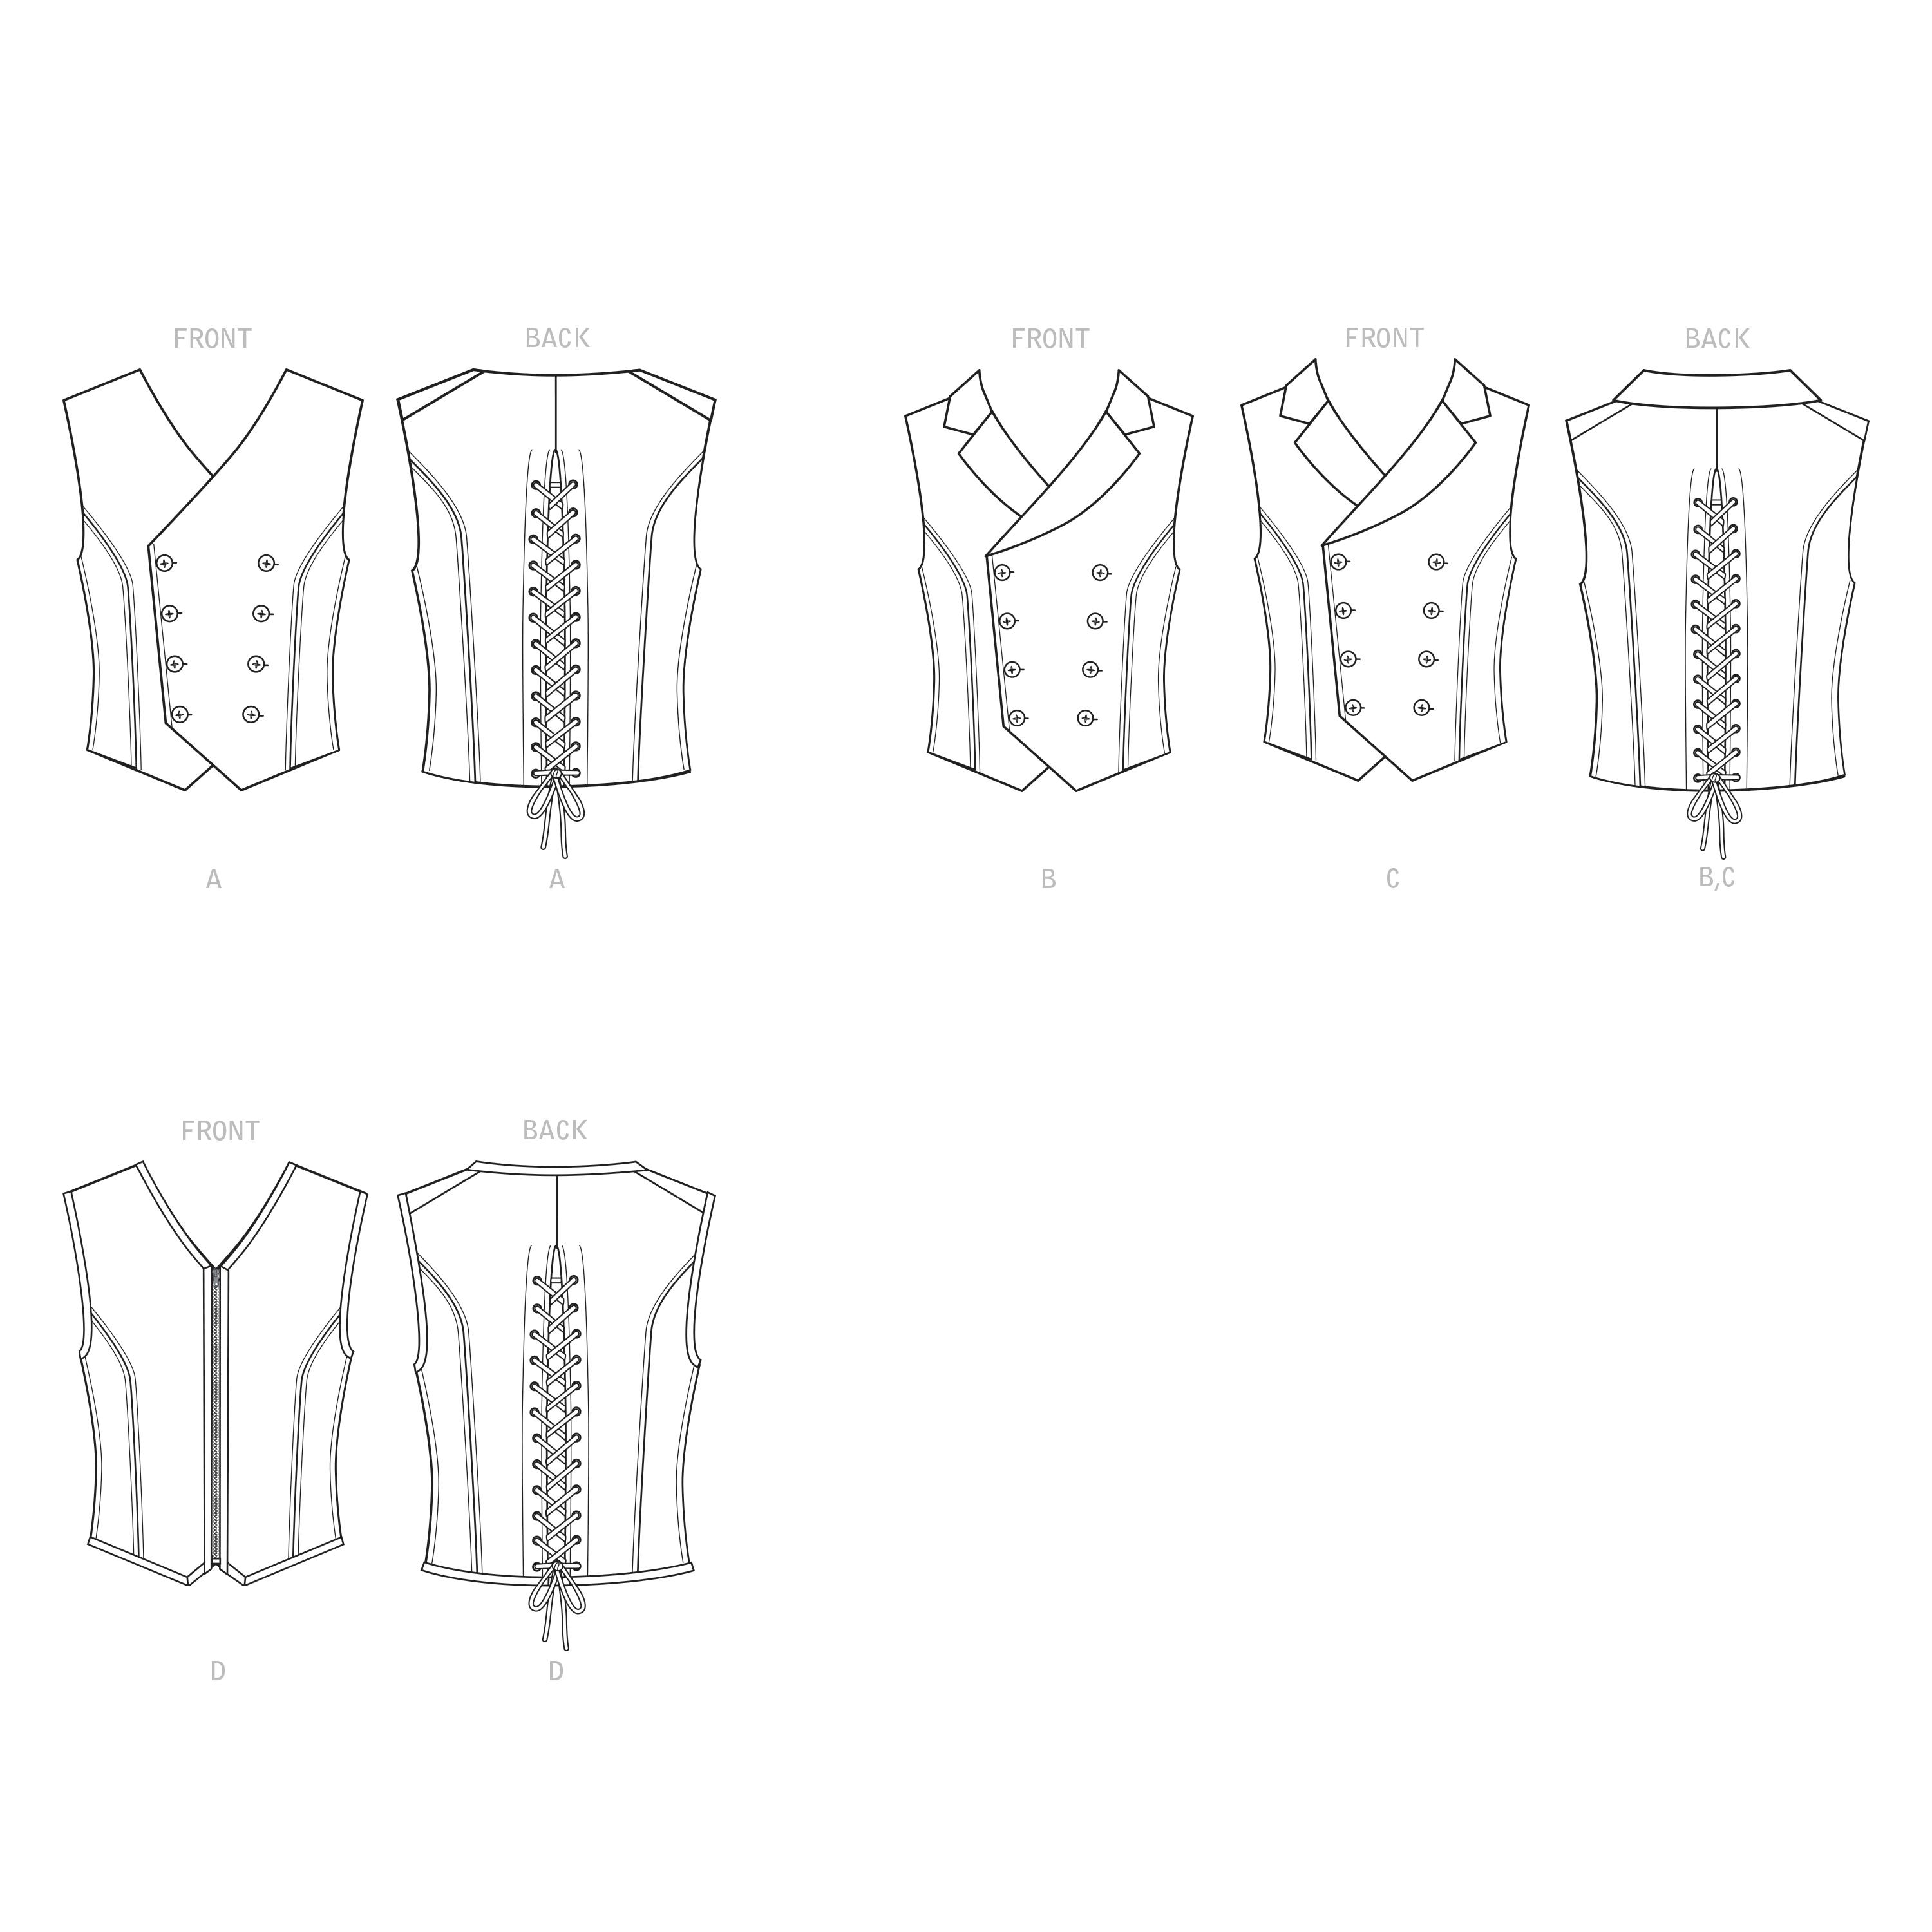 Simplicity S9087 Men's Steampunk Corset Vests